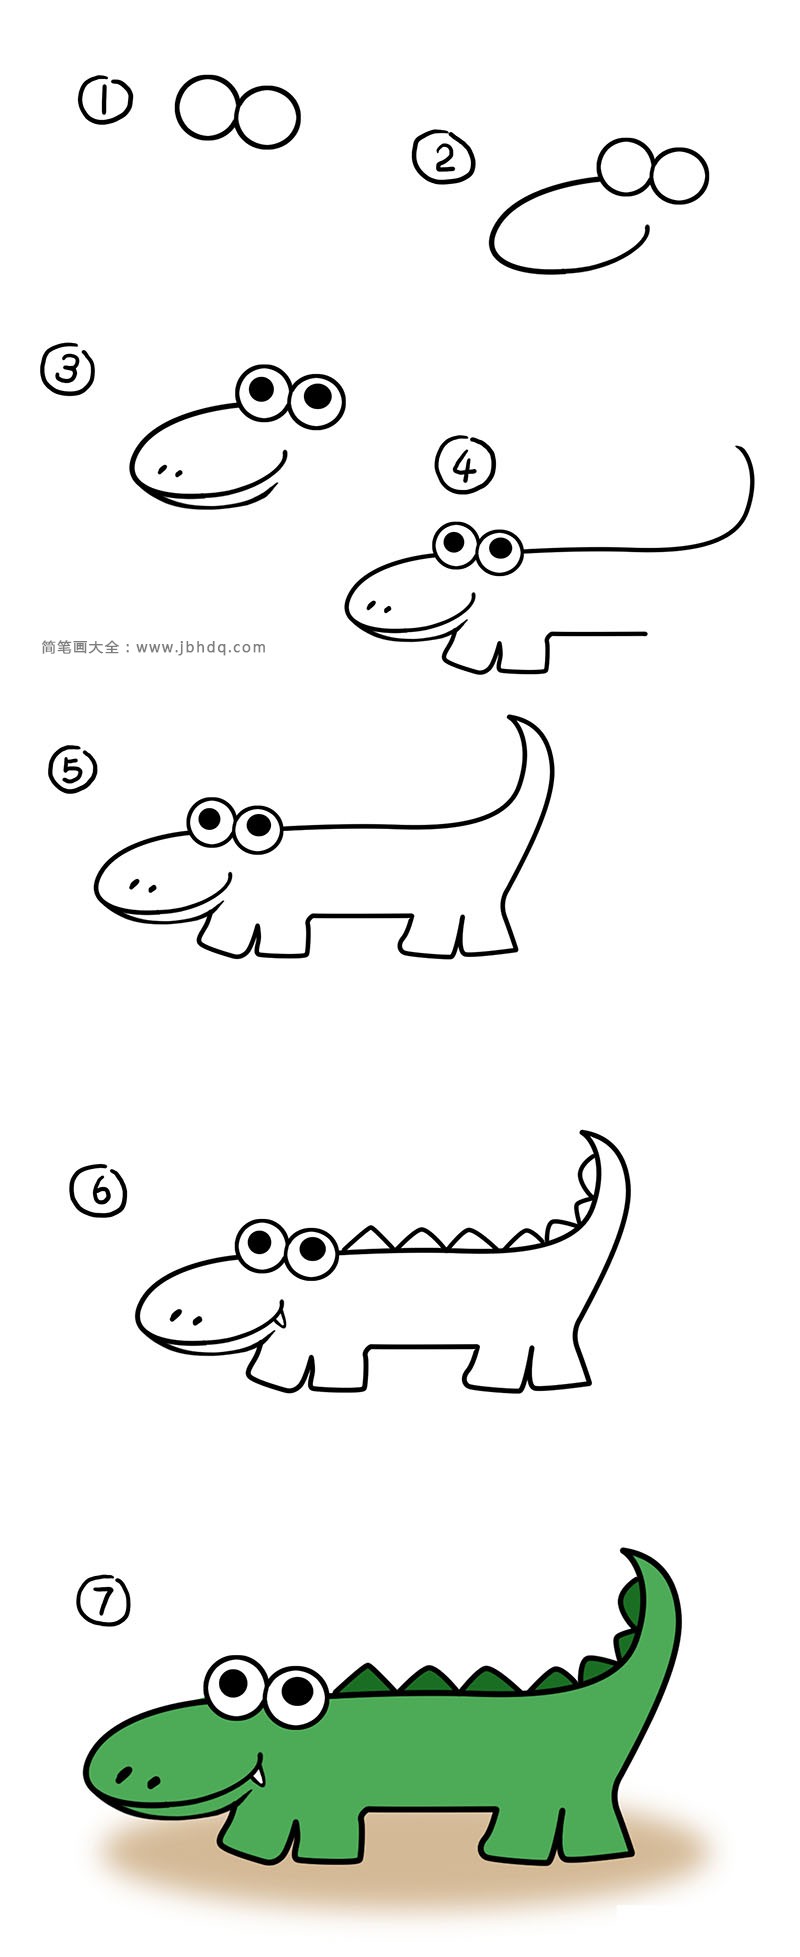 丑萌的鳄鱼简笔画教程步骤图